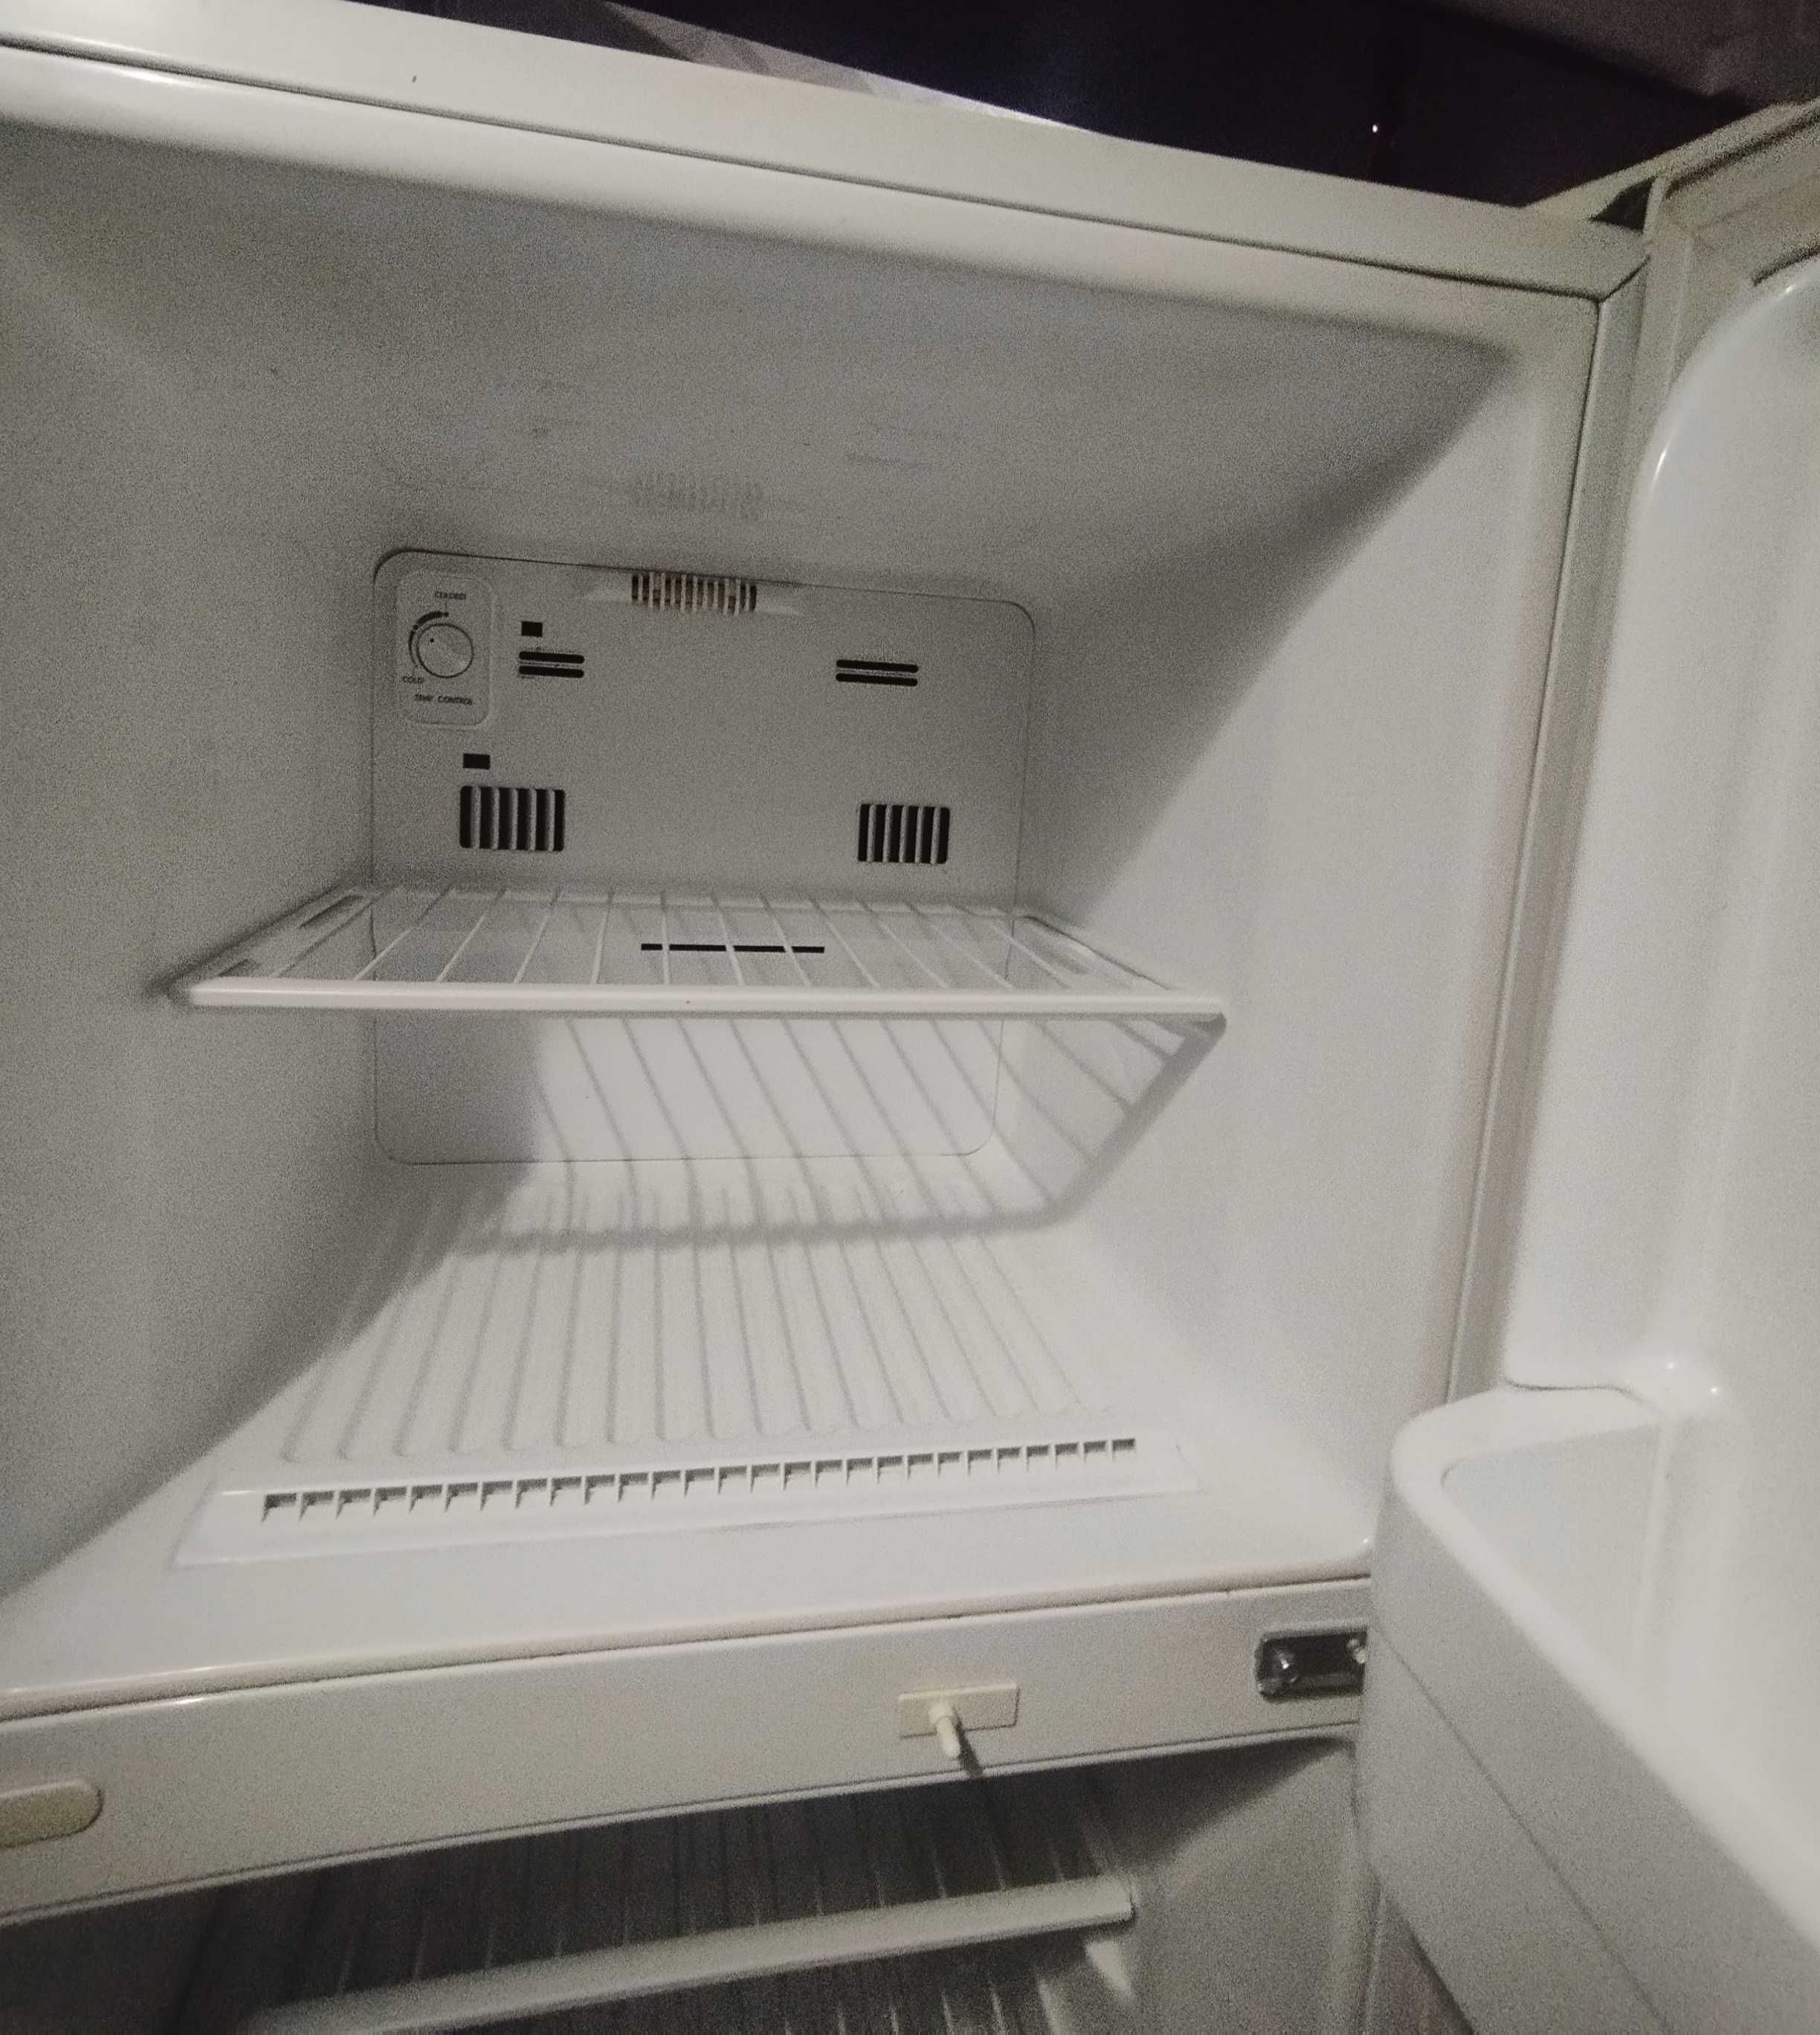 Продам холодильник LG GR-282MF